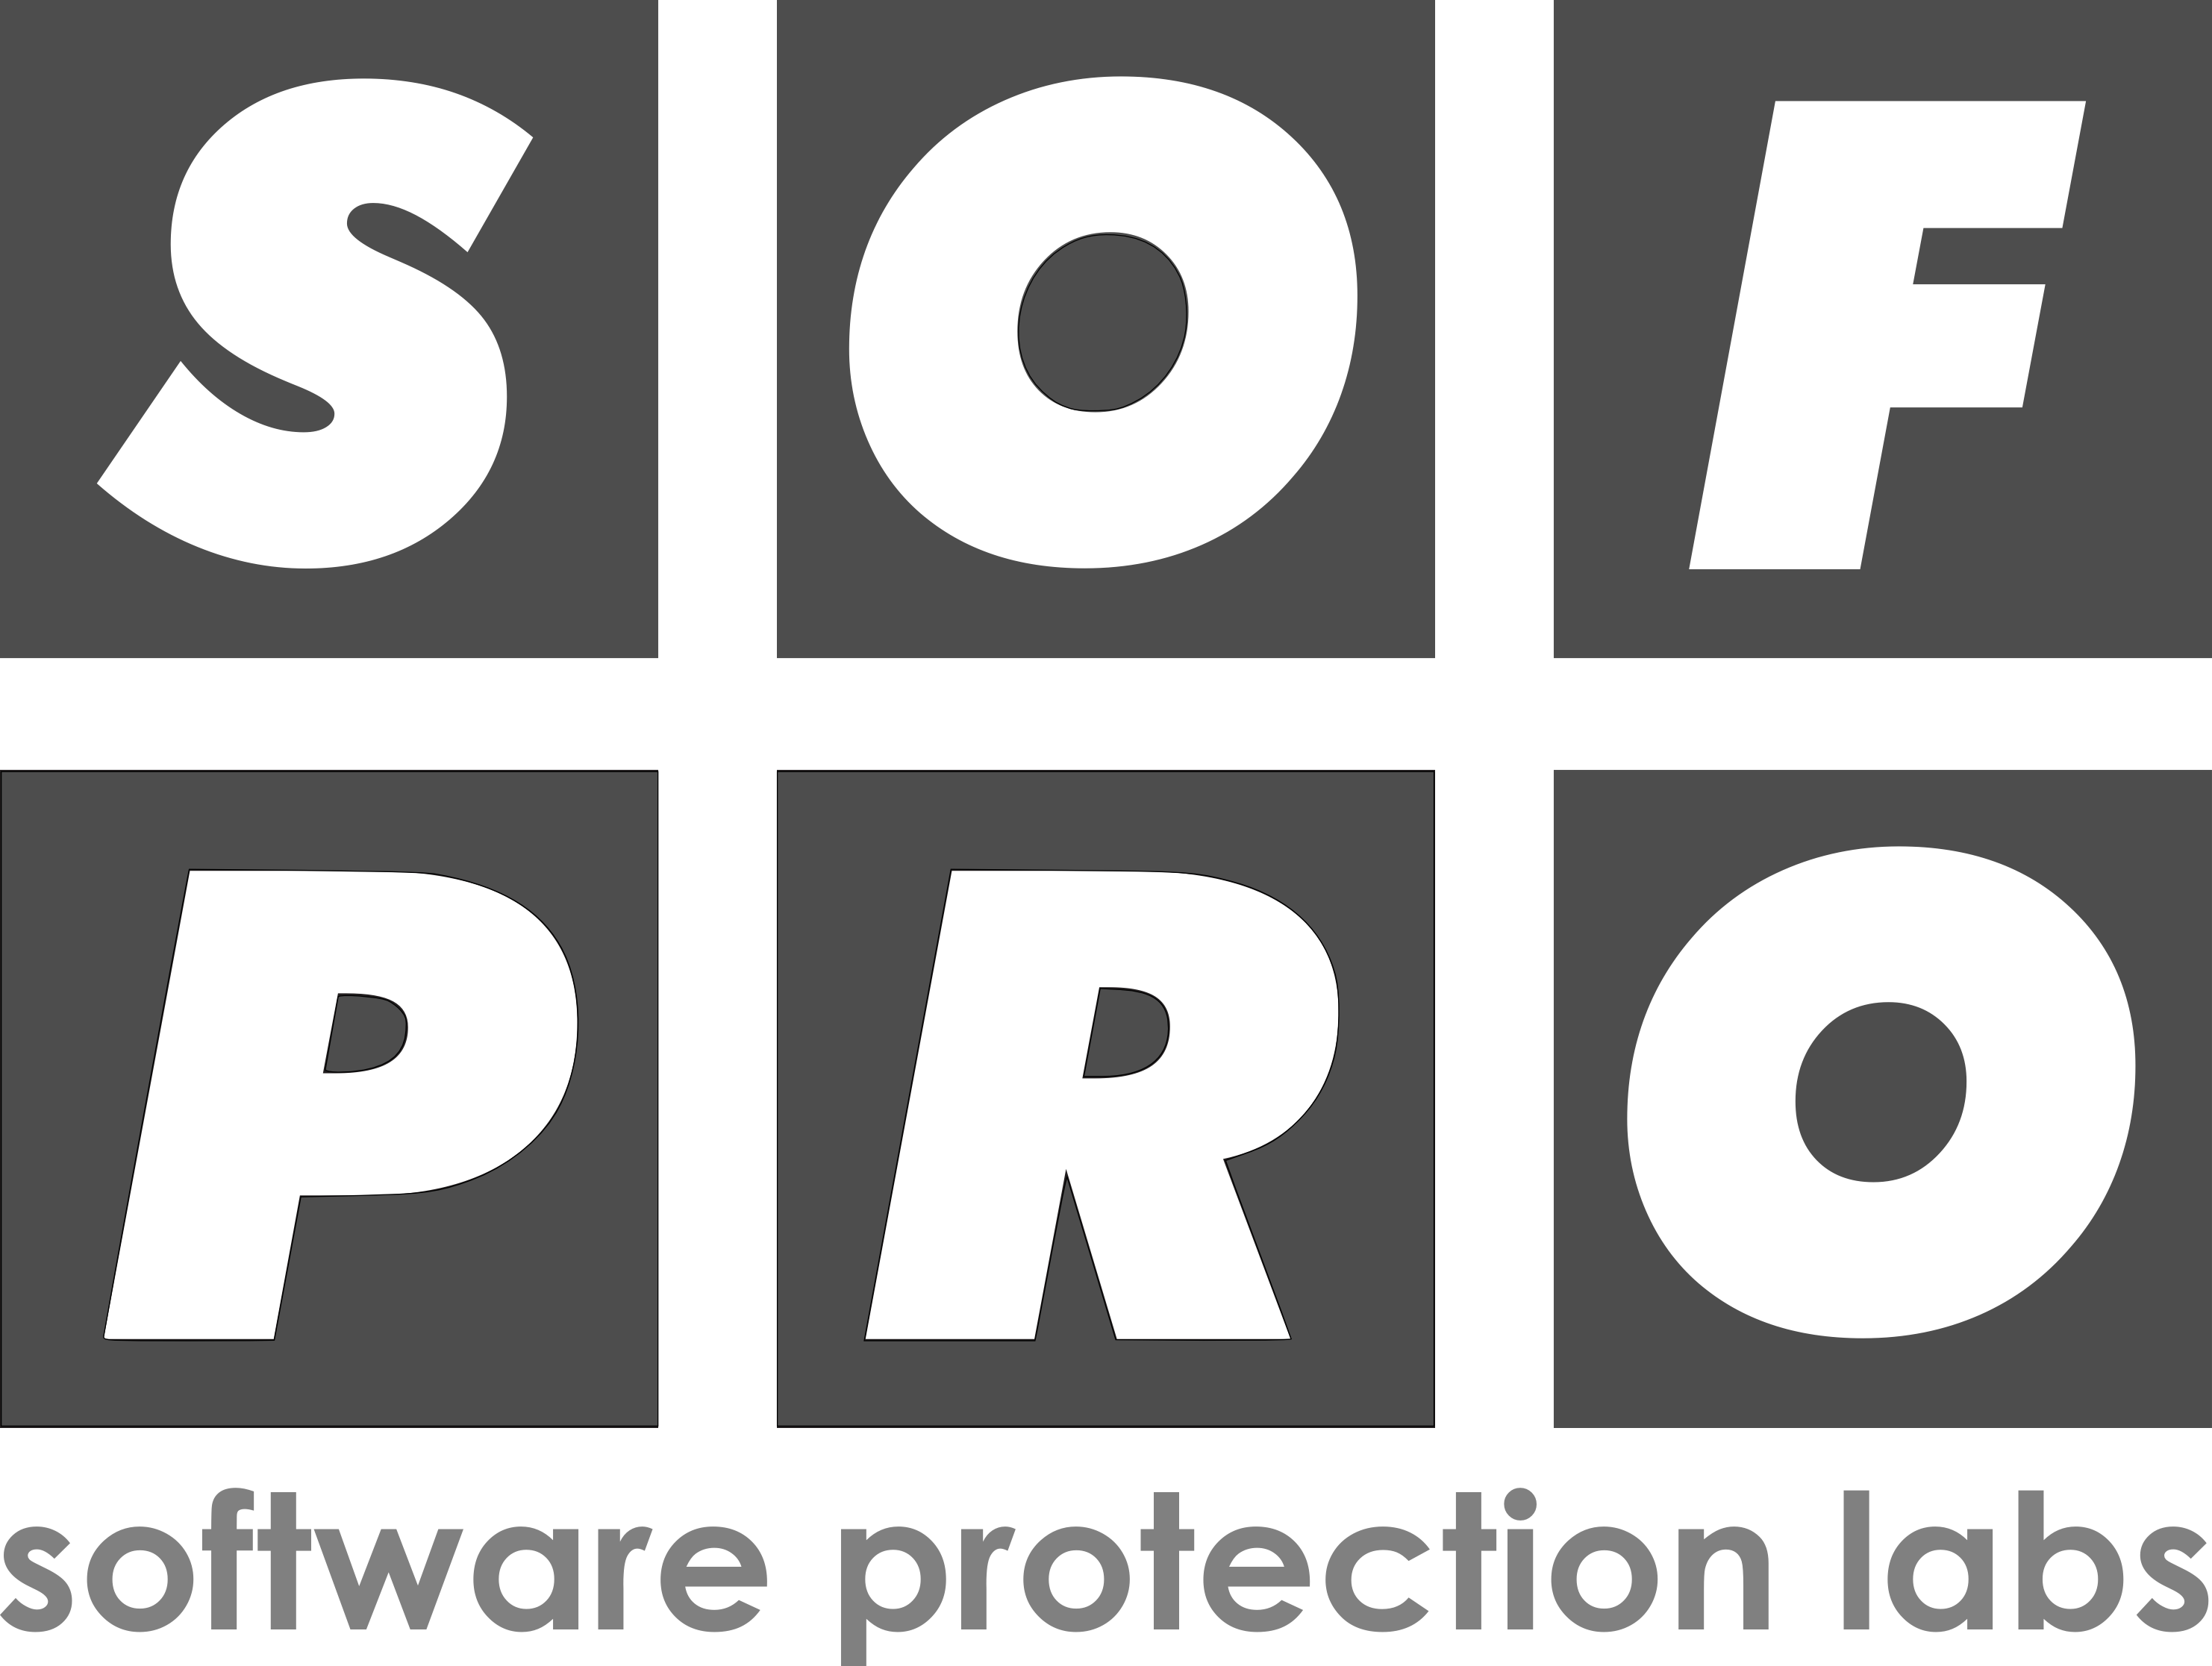 SOFPRO logo